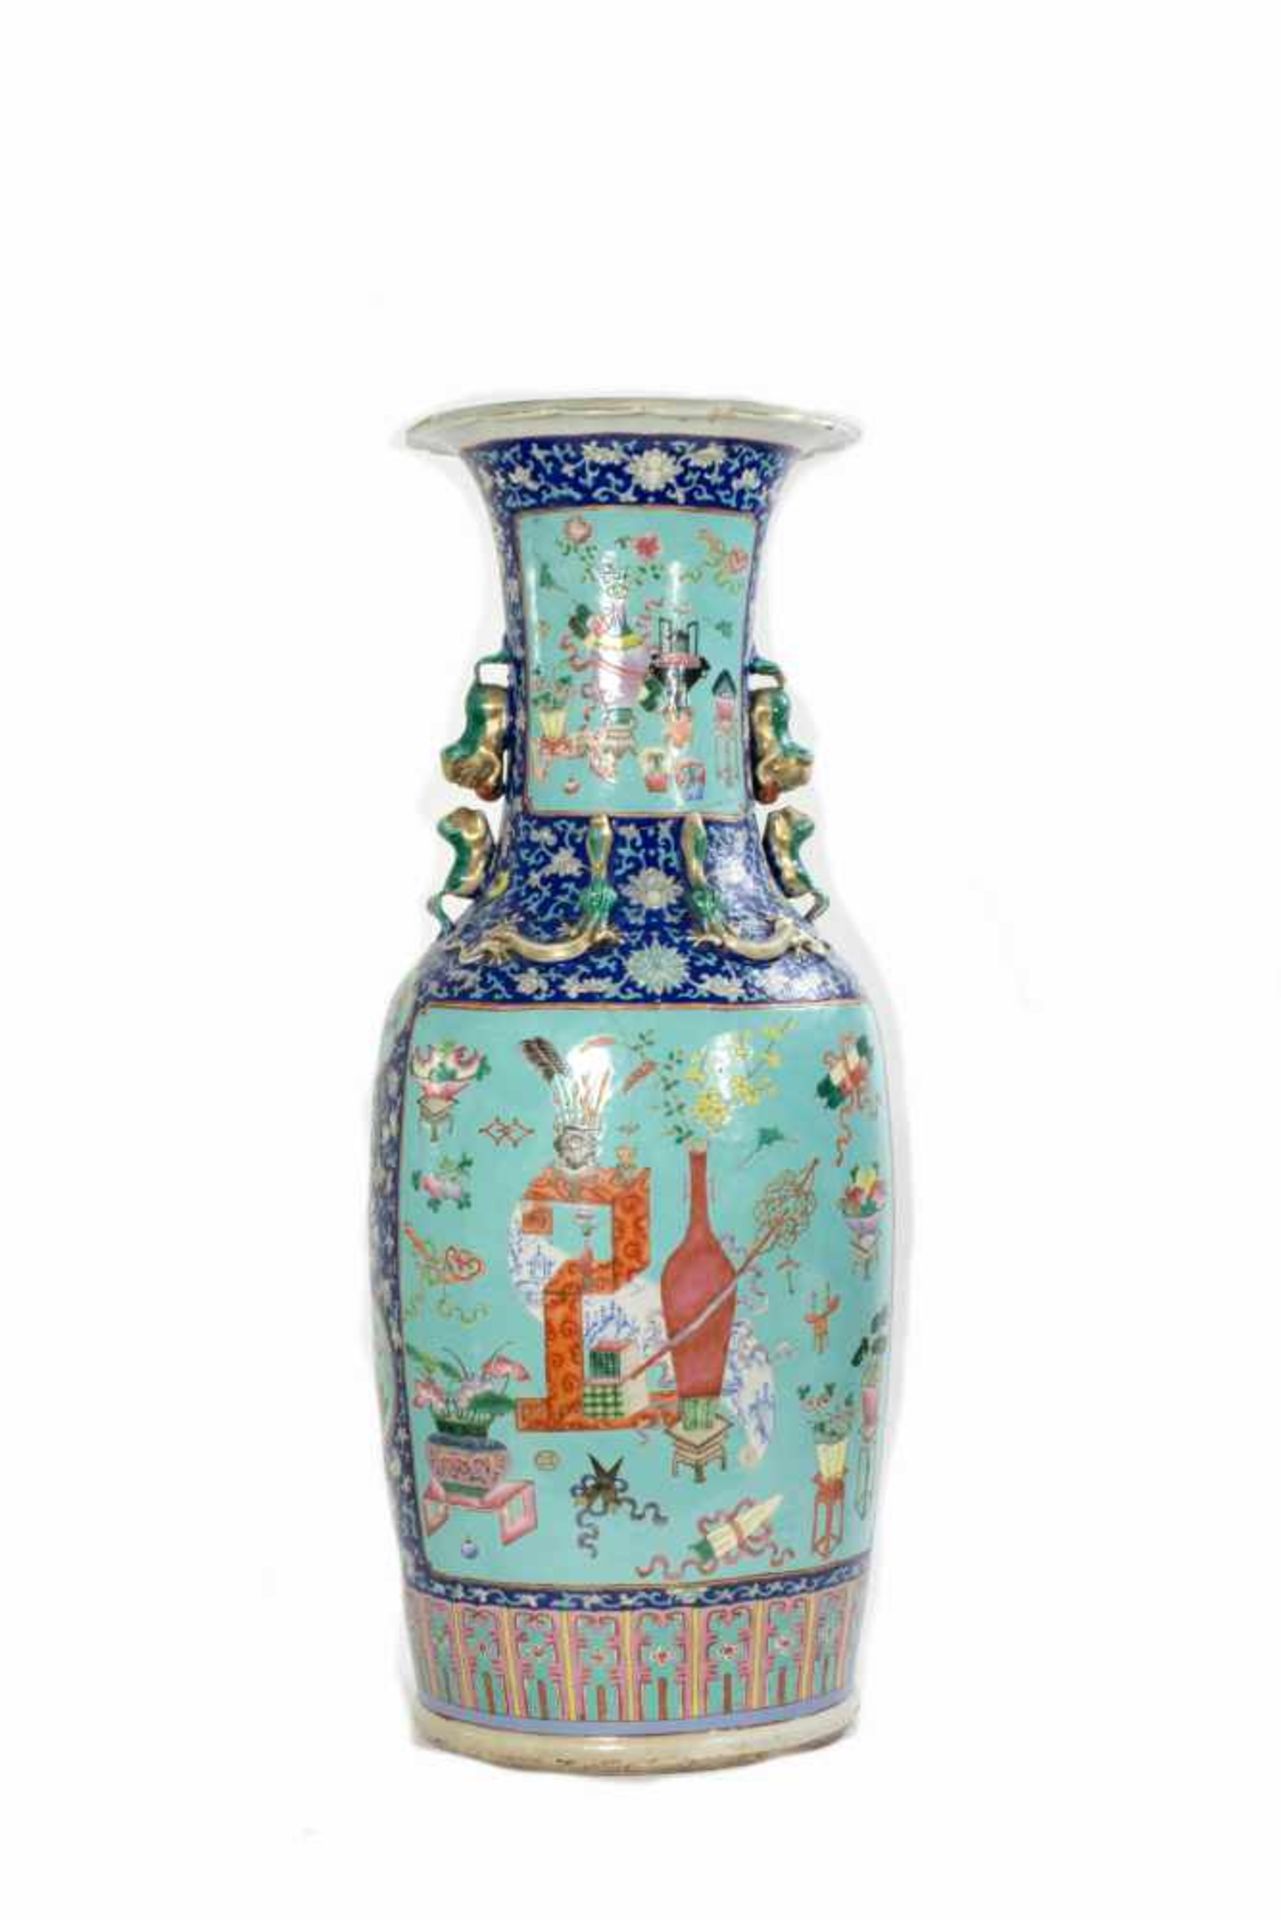 Standbodenvase China, 20. Jh., Porzellan, farbig staffiert, Höhe 82,5 cm, unterseitig mit